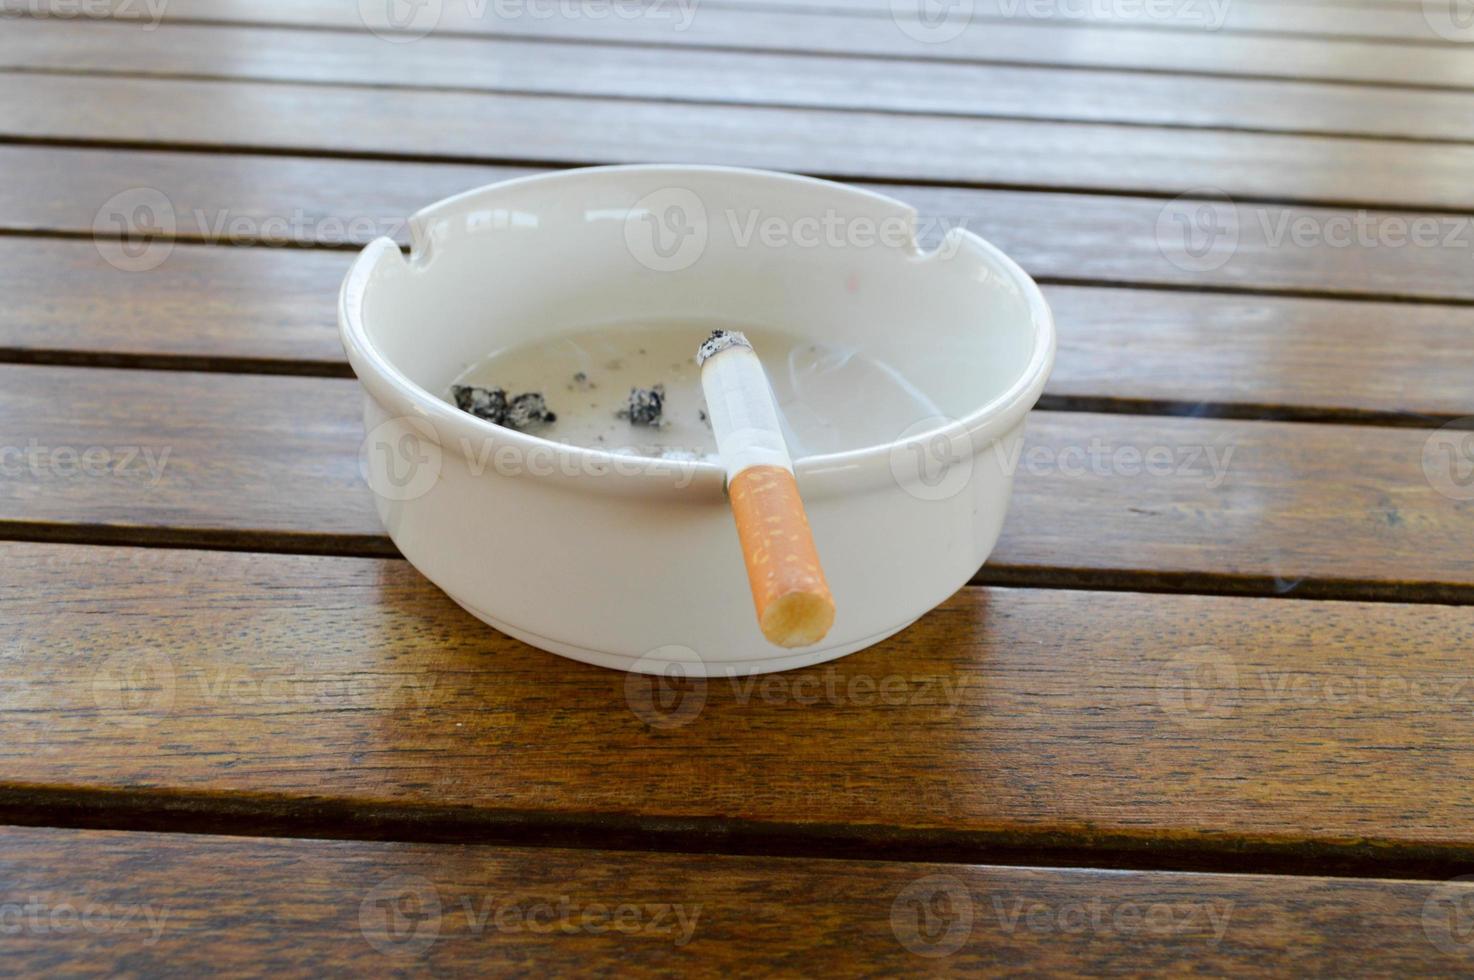 Auf einem Holztisch in einem Café steht ein weißer Keramikaschenbecher mit einer Zigarette und Asche mit einem schwarzen Feuerzeug zum Rauchen foto